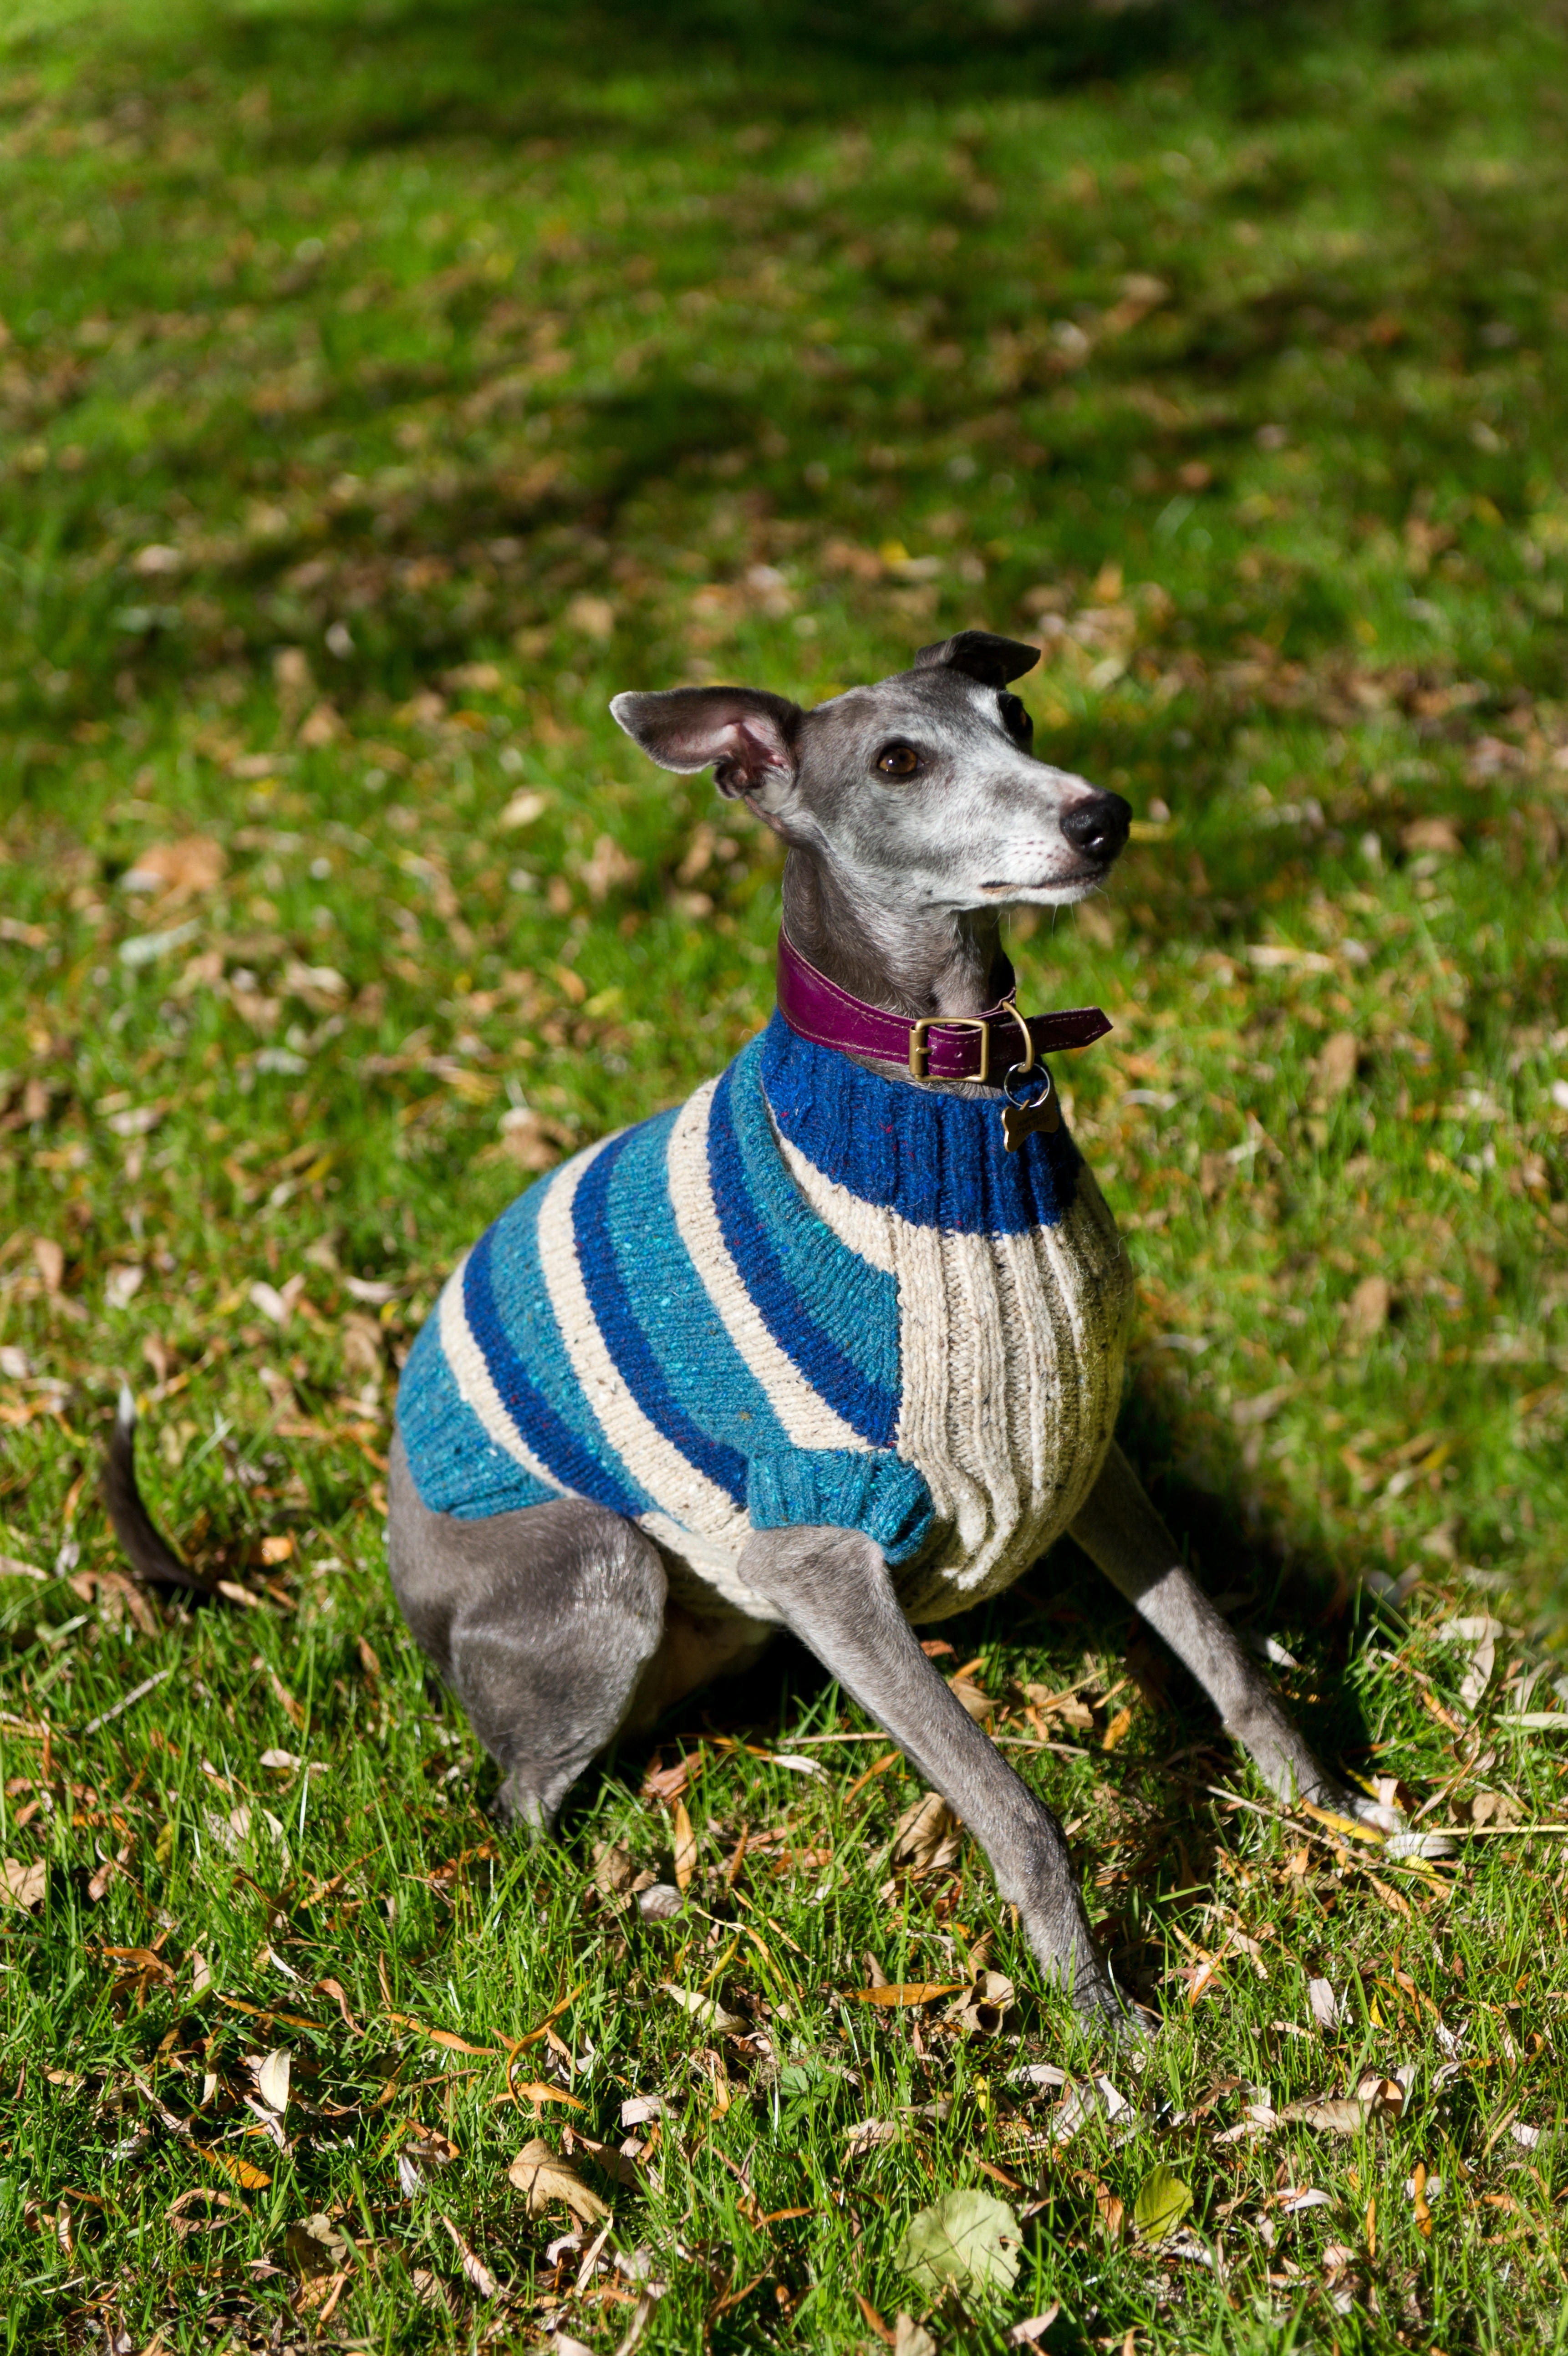 grey and white short coated medium size dog